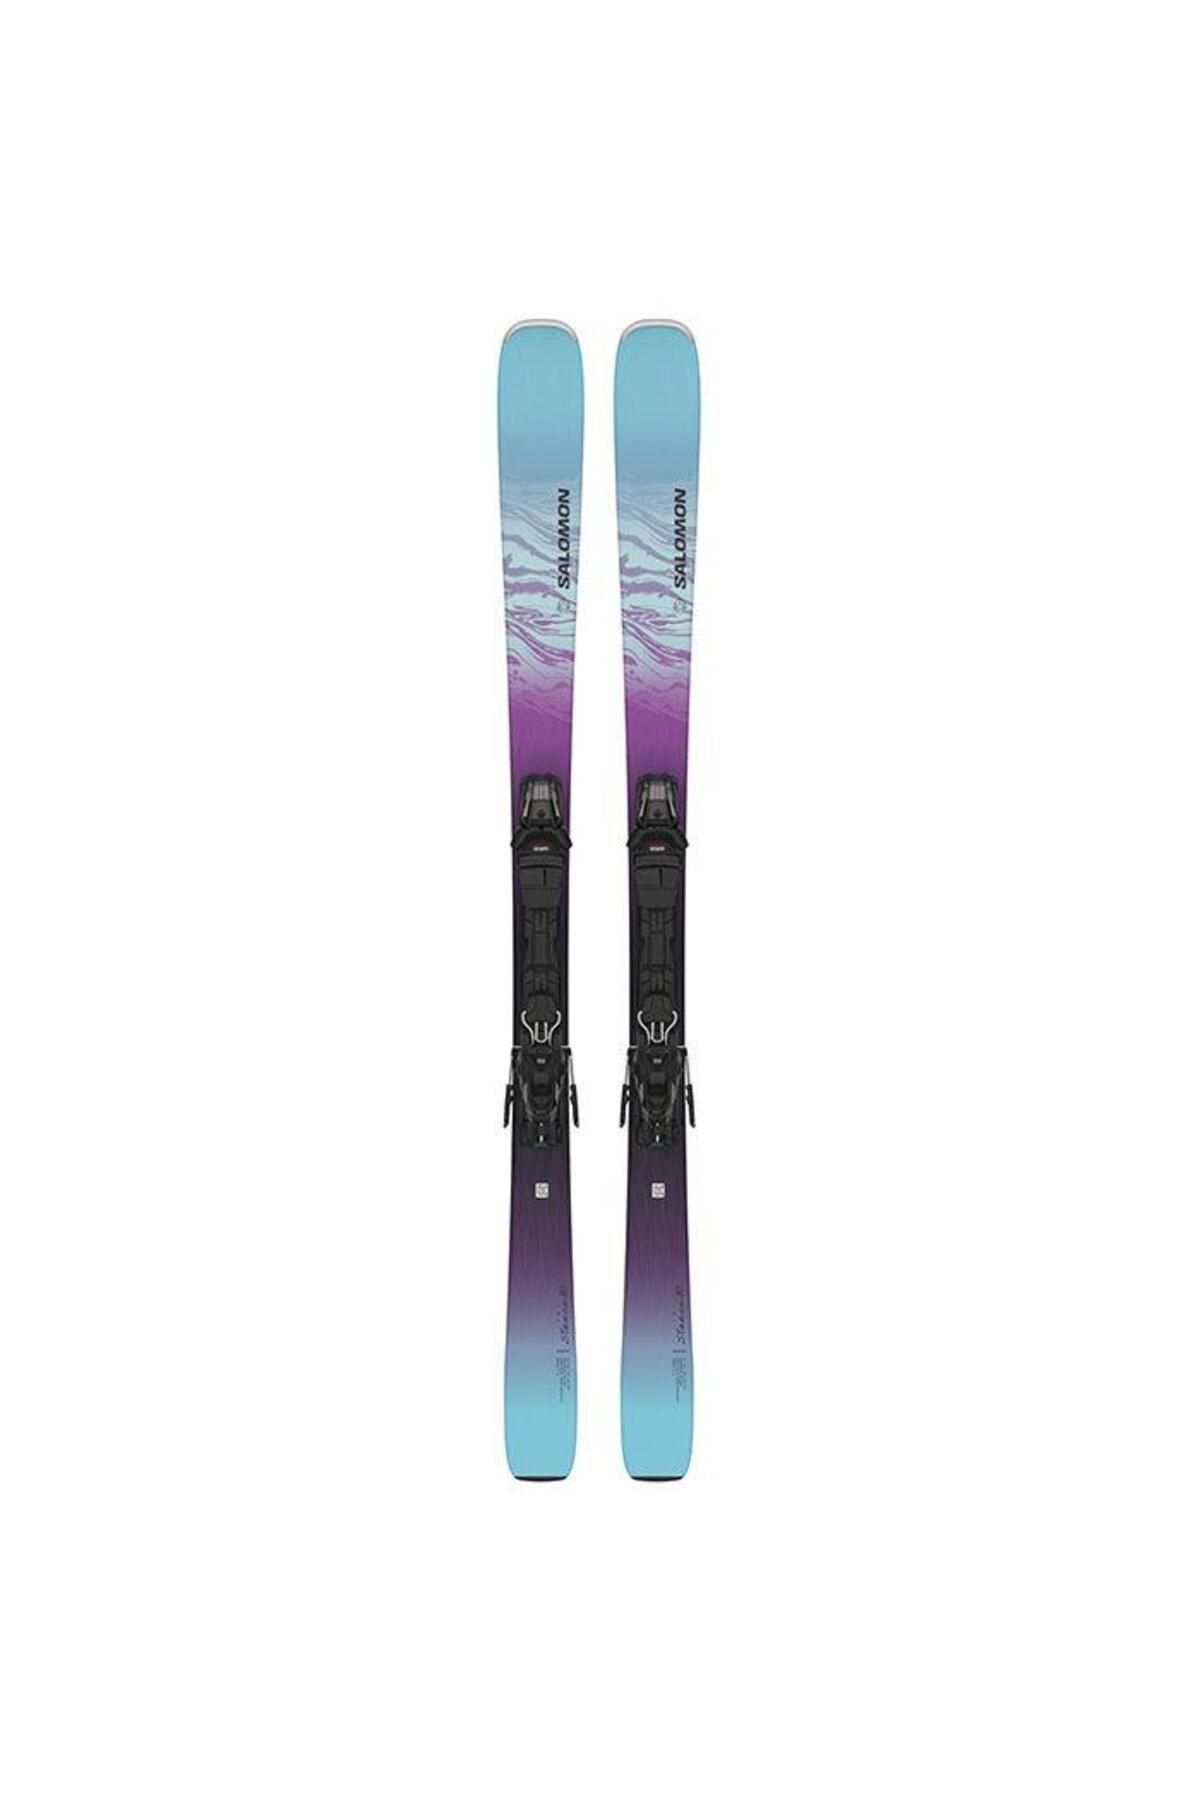 Salomon Stance 80 Kadın Kayak Bağlaması-l47235300bda